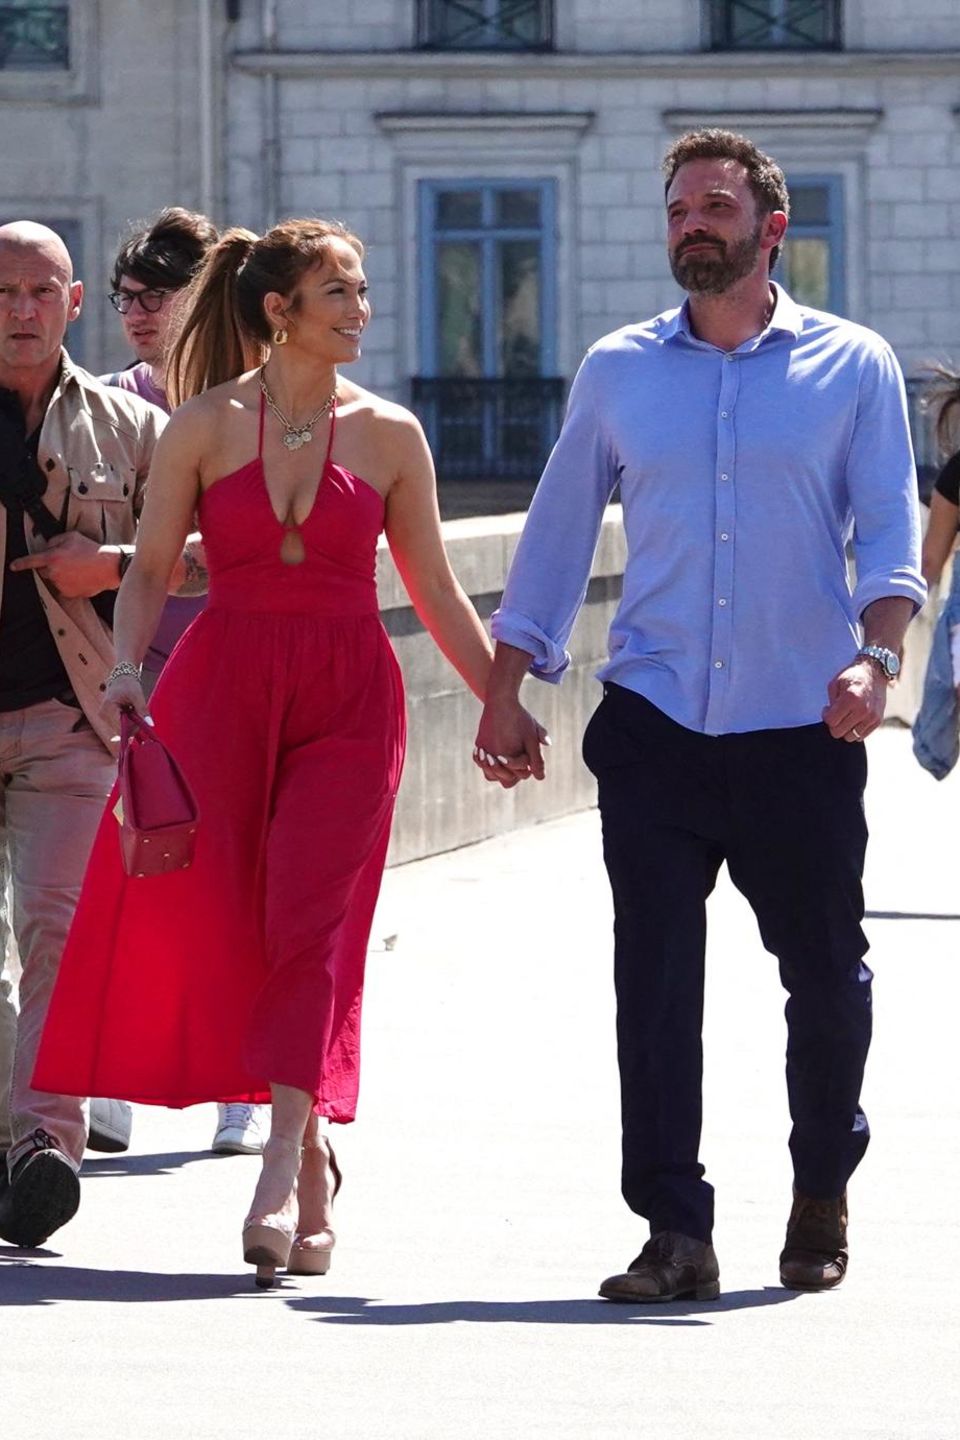 Flitterwochen in der Stadt der Liebe! Arm in Arm spazieren Jennifer Lopez und Ben Affleck durch die romantischen Straßen von Paris. Passenderweise trägt Jennifer Lopez ein Maxikleid in Knallrot, der Farbe der Liebe. 